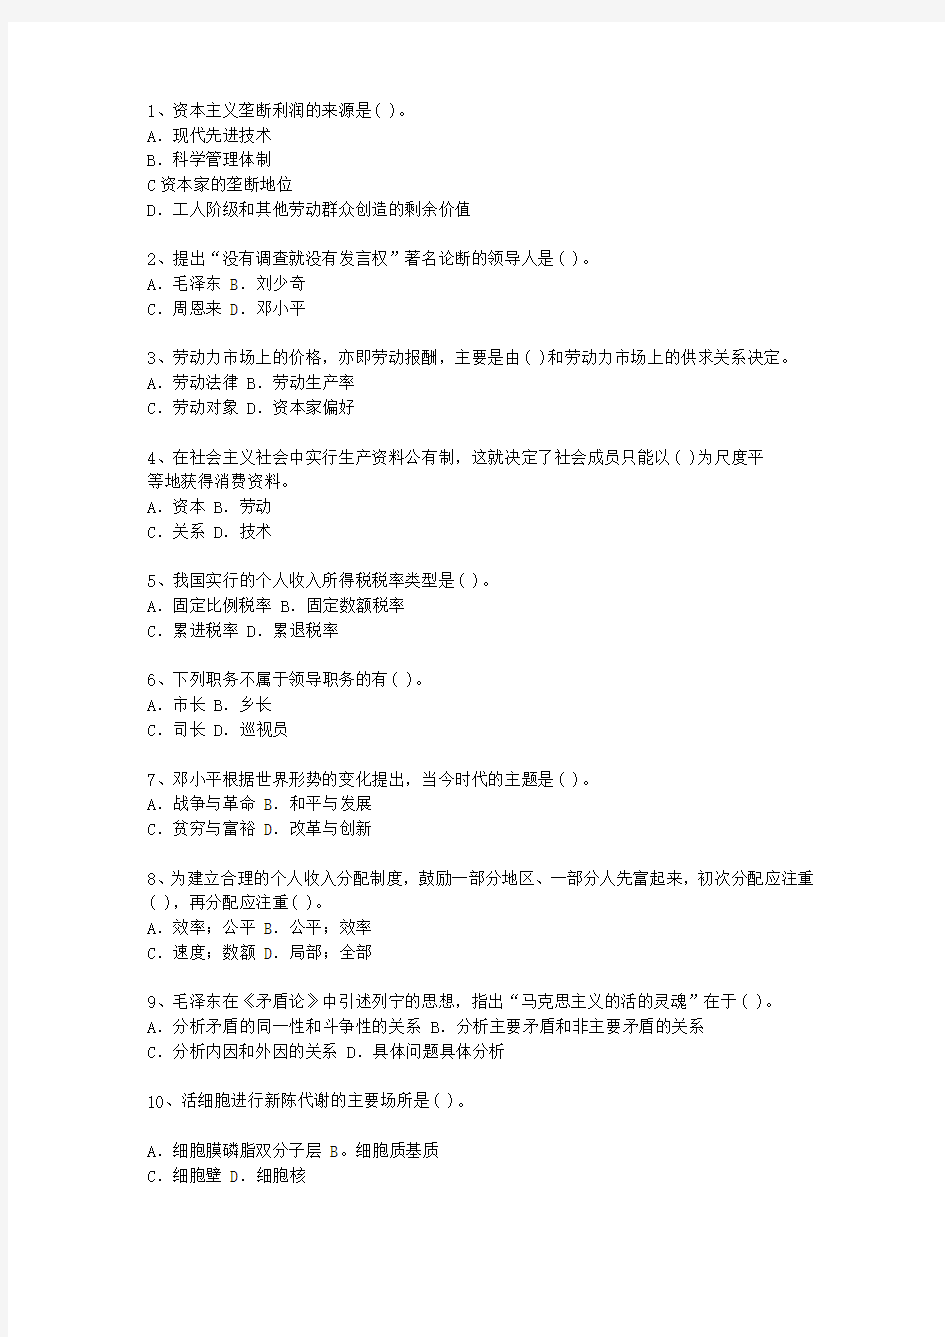 2013台湾省最新公开选拔镇副科级领导干部考试技巧、答题原则